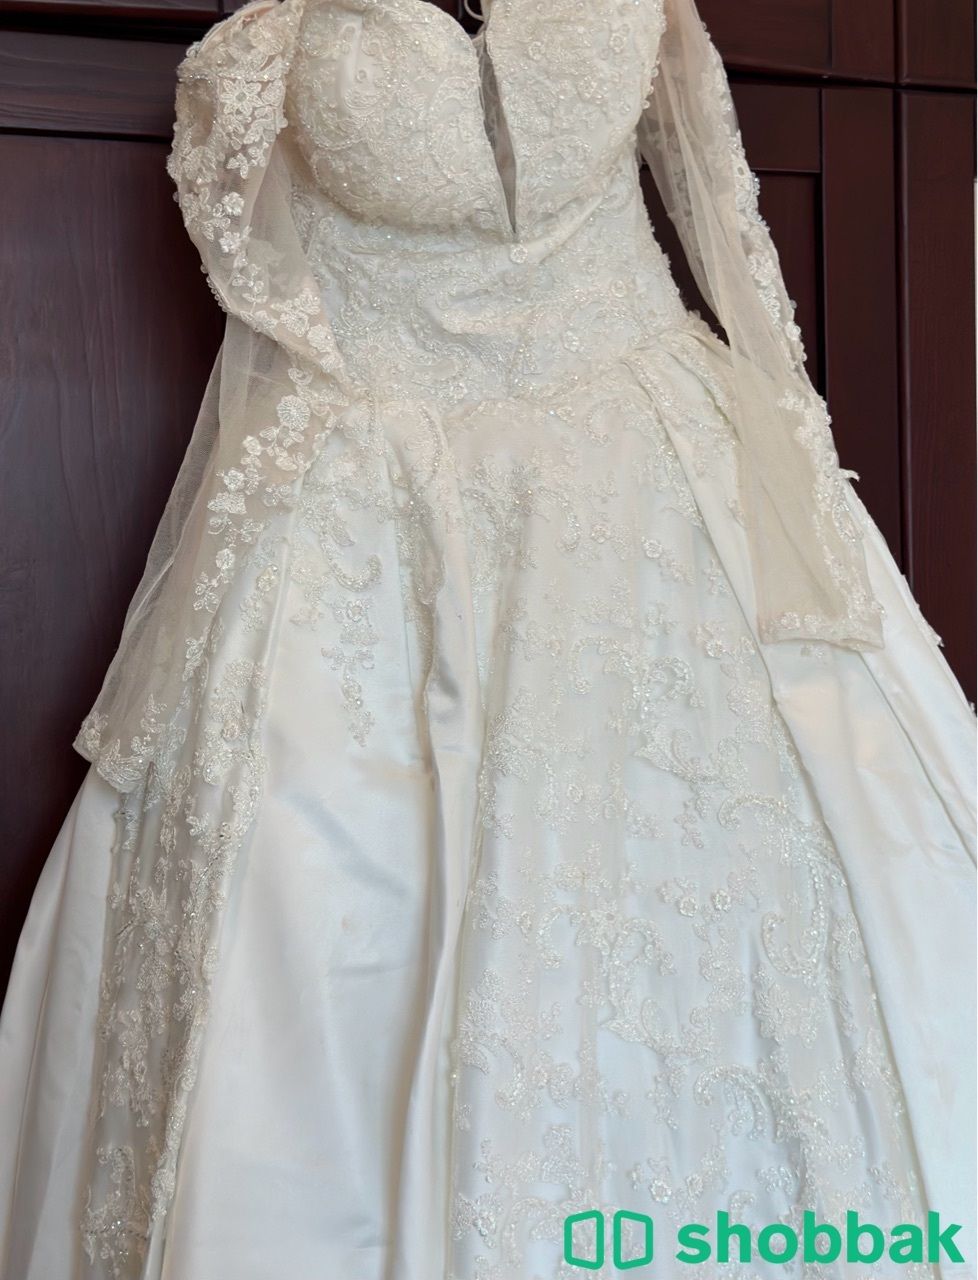 فستان زواج للبيع شامل التاج والطرحة  شباك السعودية